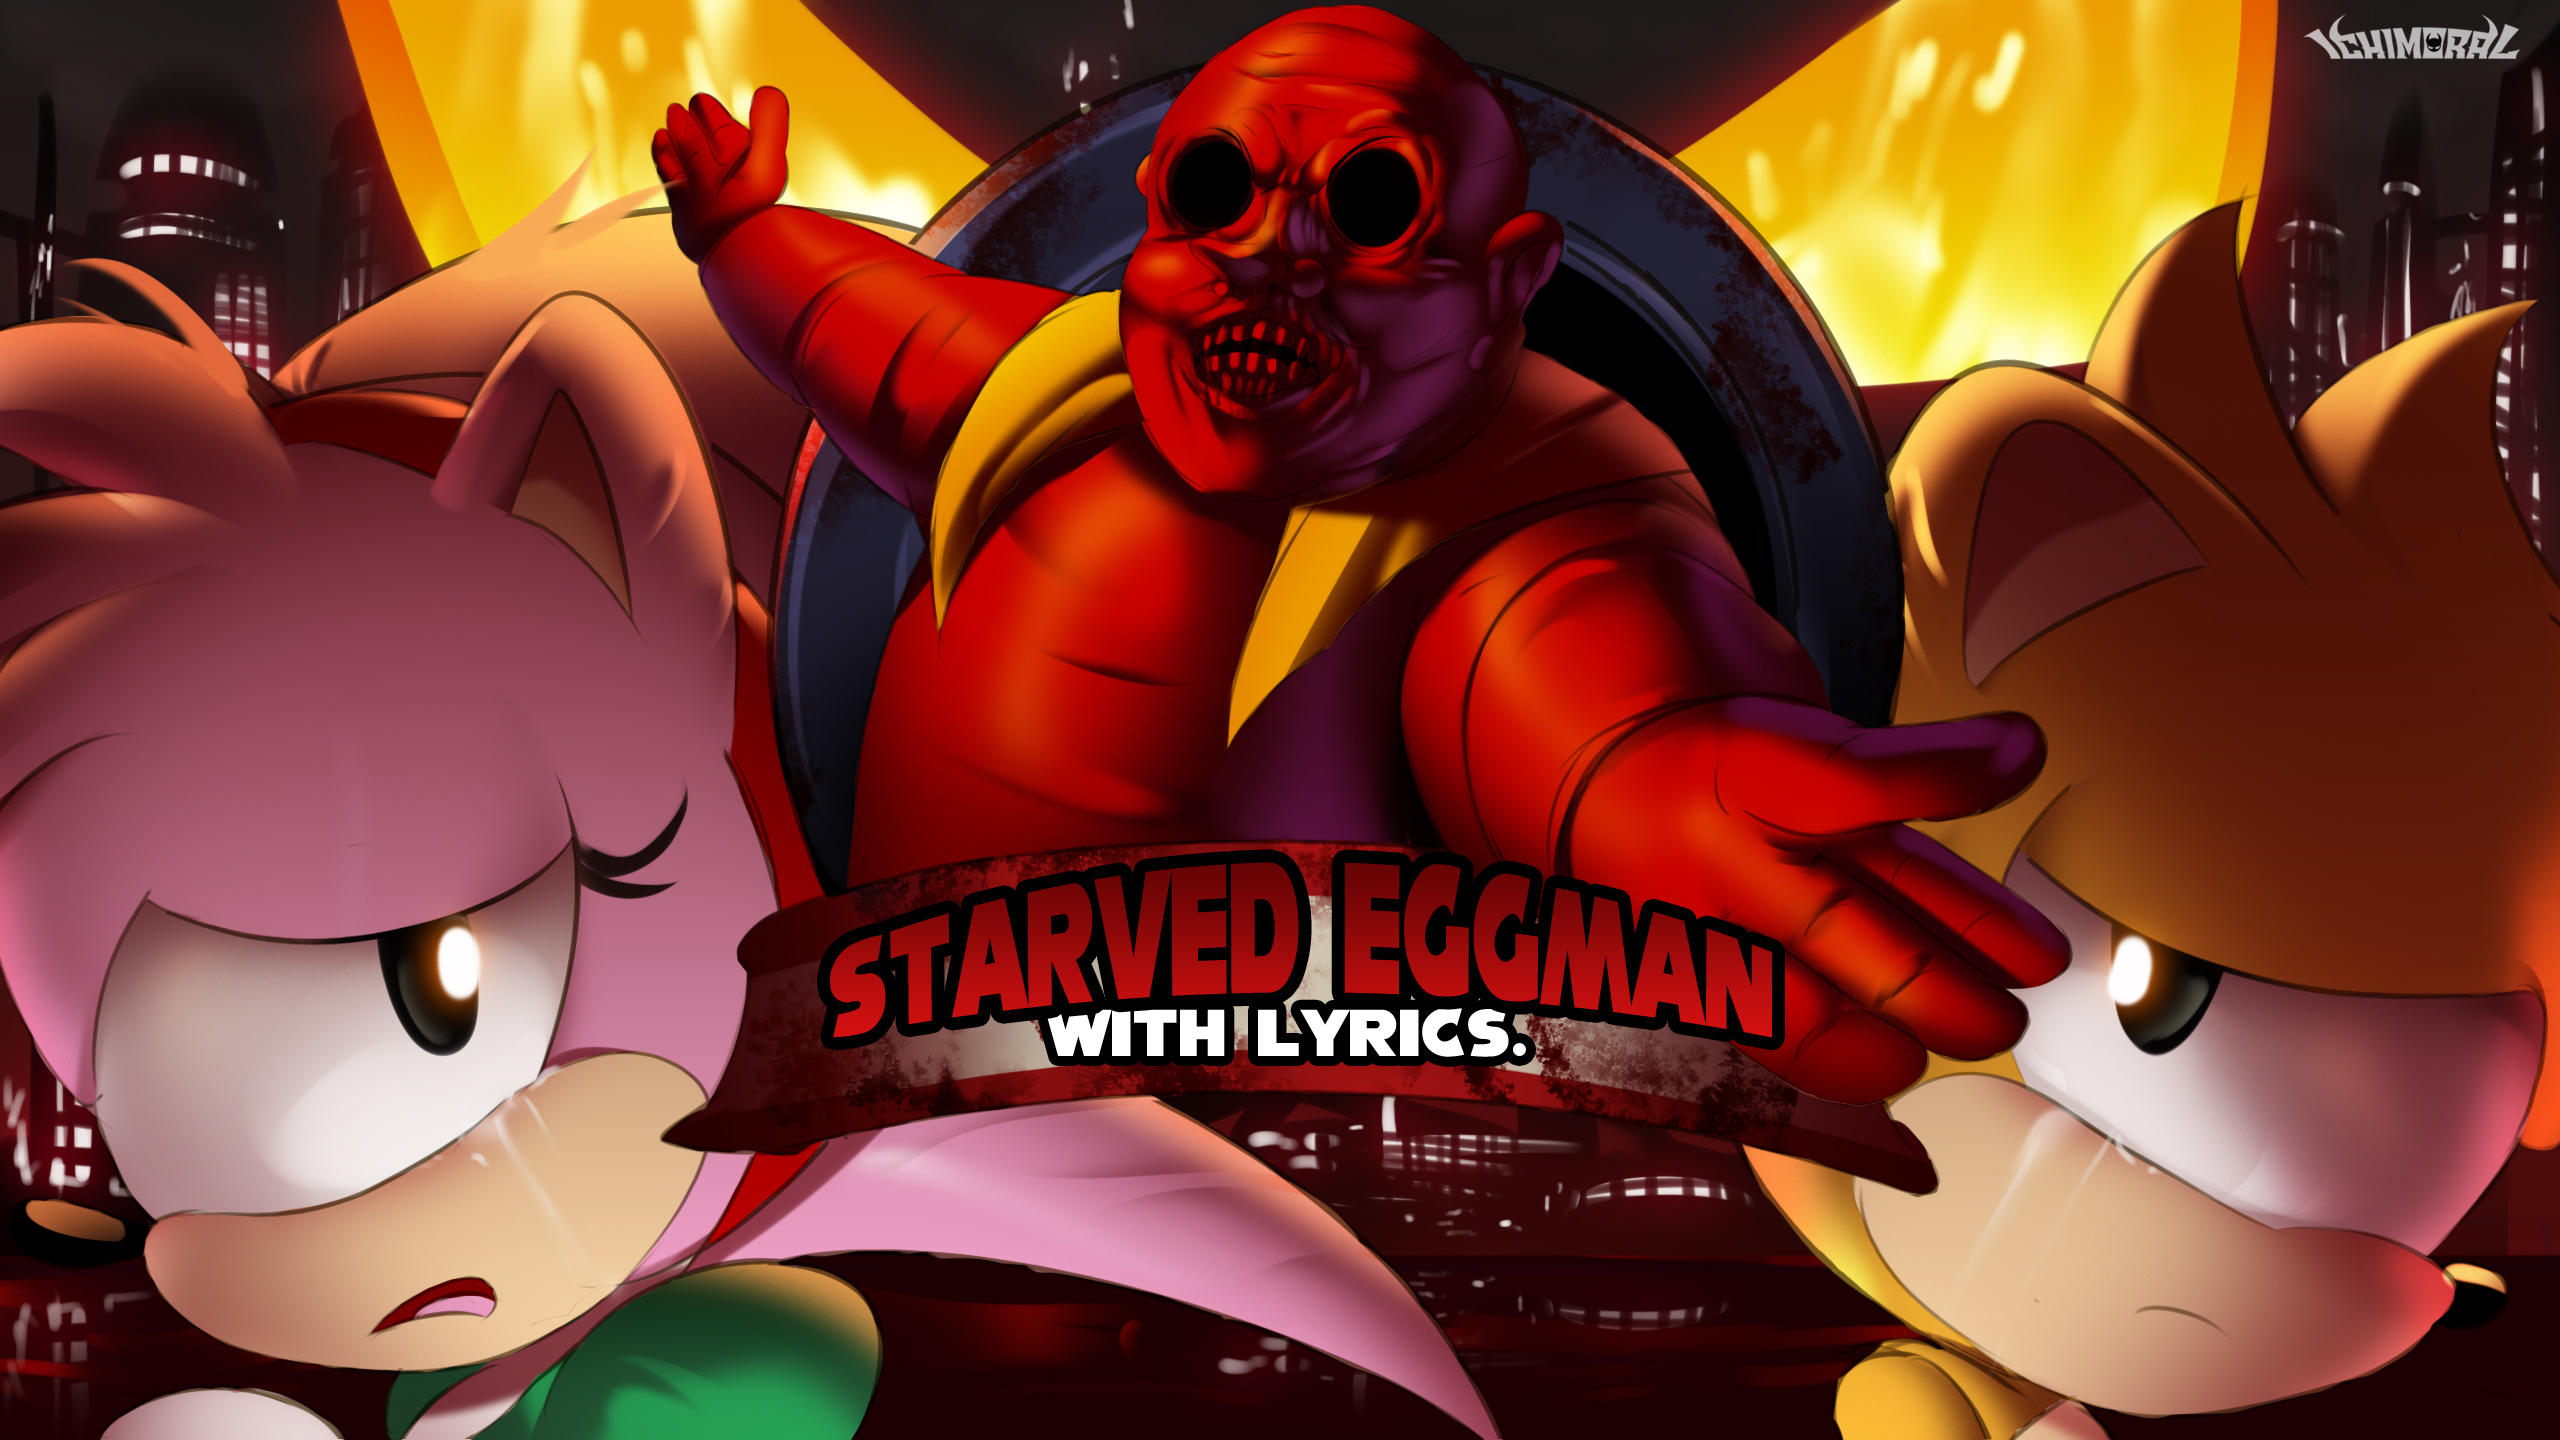 Starved Eggman - Vs Sonic.exe 3.0 by ichimoral on DeviantArt